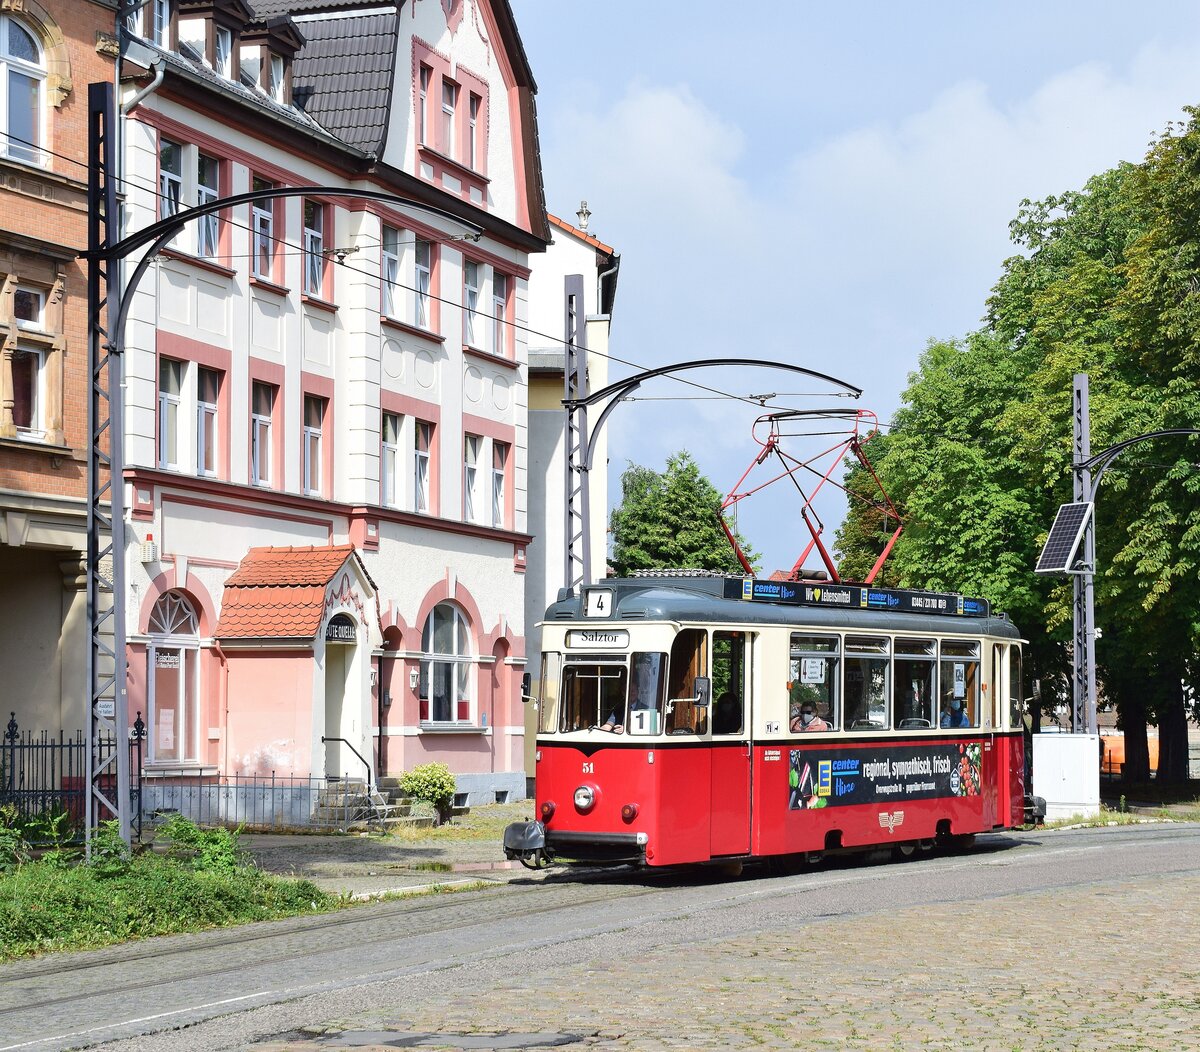 Tw51 biegt beim verlassen des Jägerplatz in die Poststraße ein auf den Weg zum Salztor.

Naumburg 11.08.2021